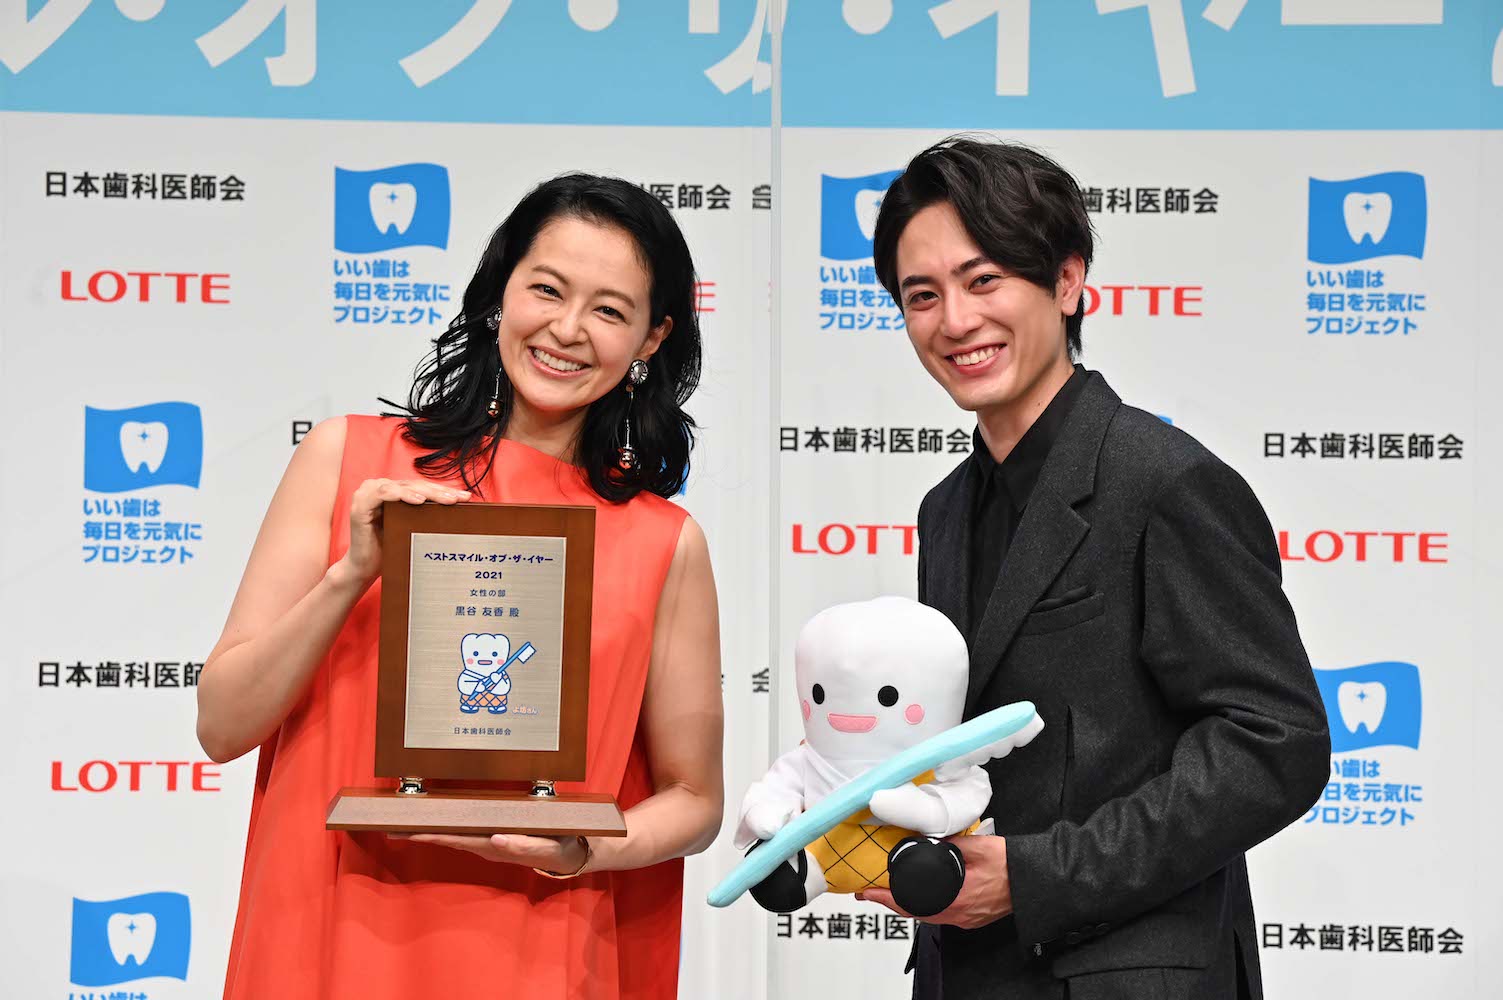 「ベストスマイル・オブ・ザ・イヤー2021」を受賞した黒谷友香と間宮祥太朗